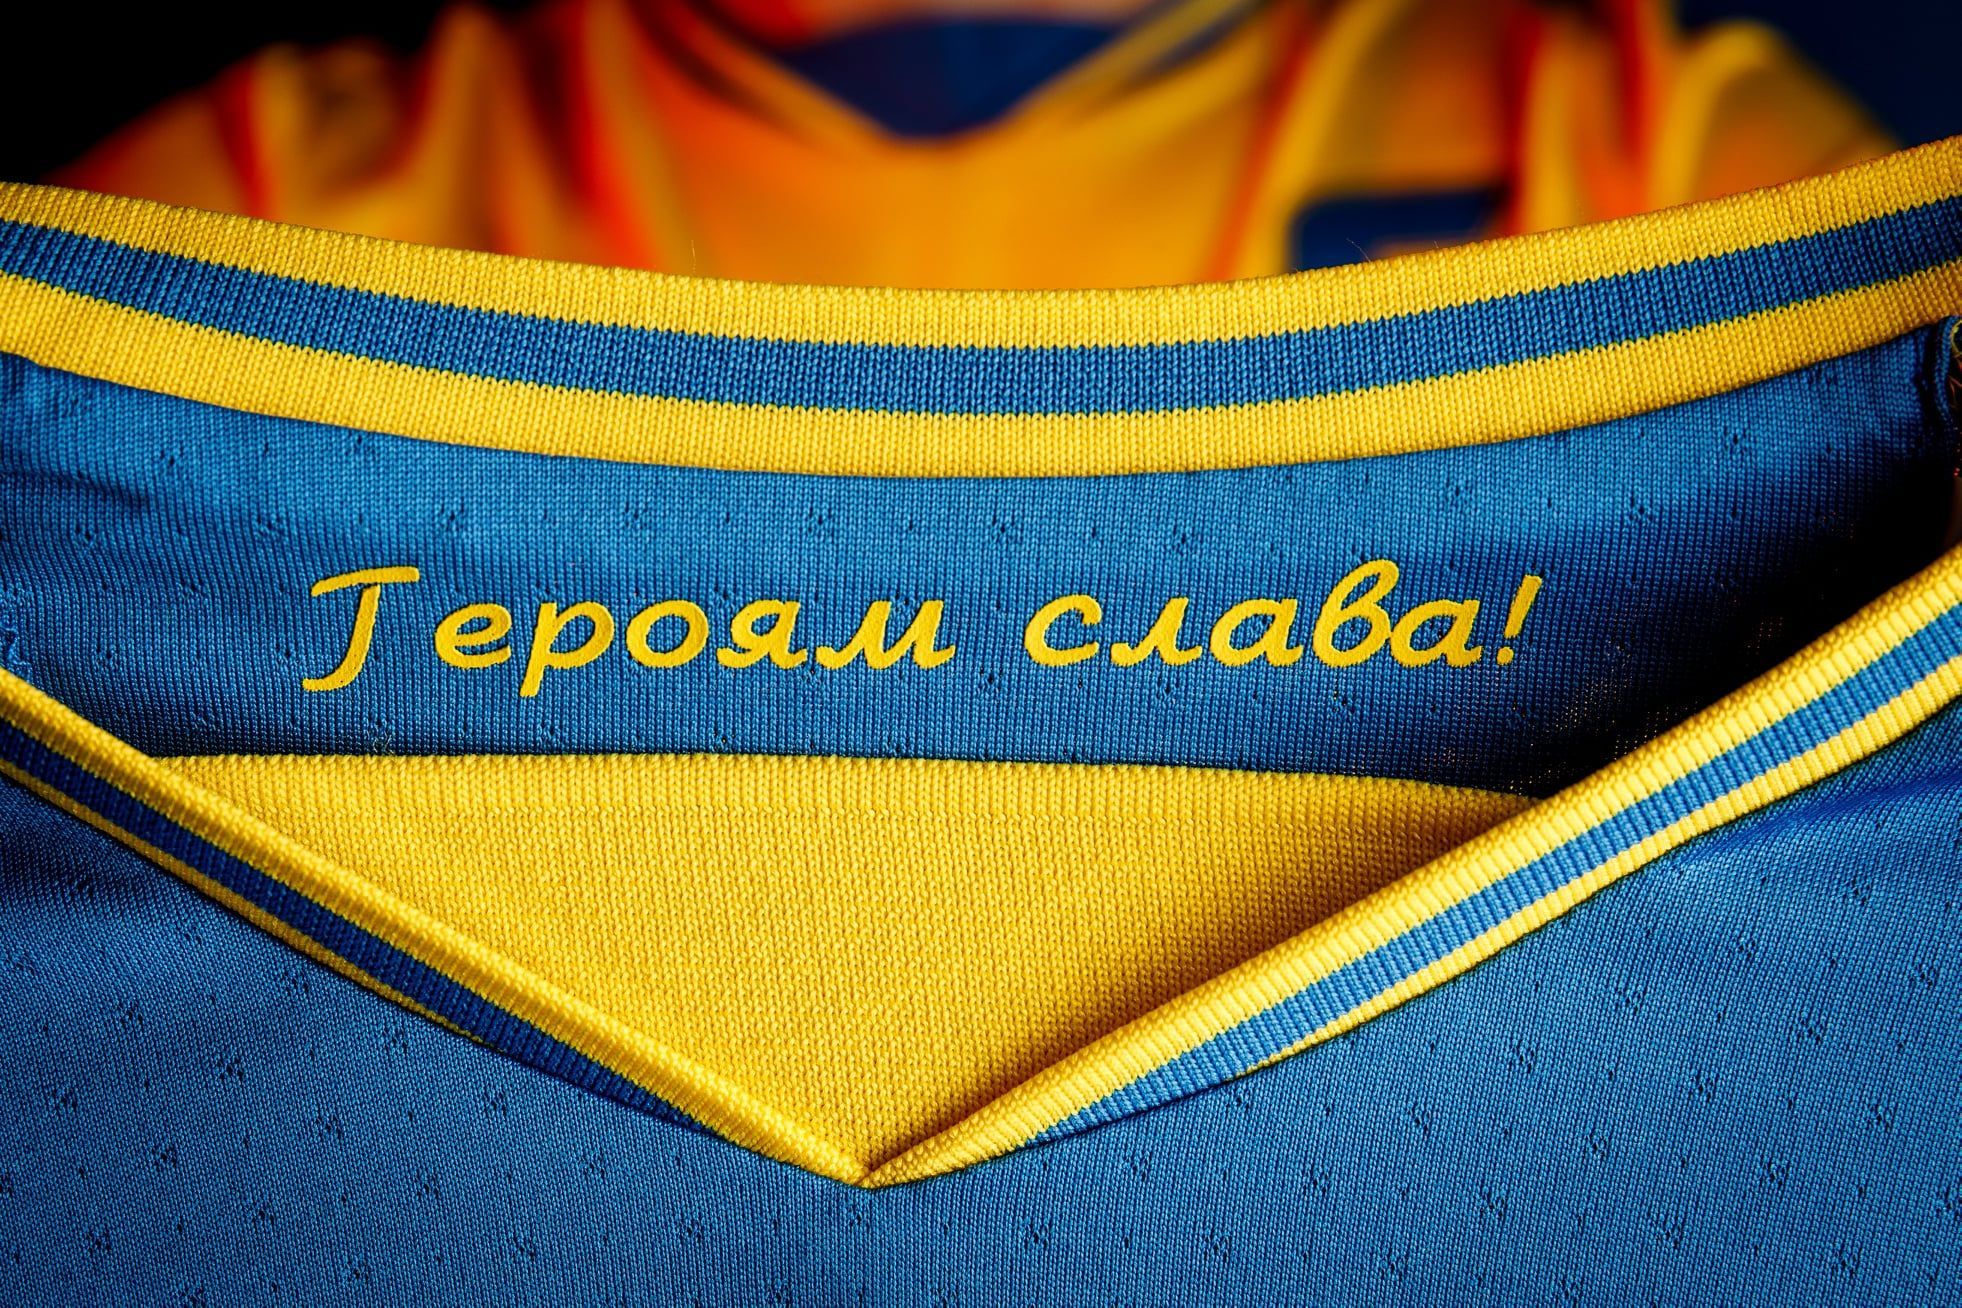 В Украине официально прокомментировали запрет использовать "Героям слава" на форме сборной